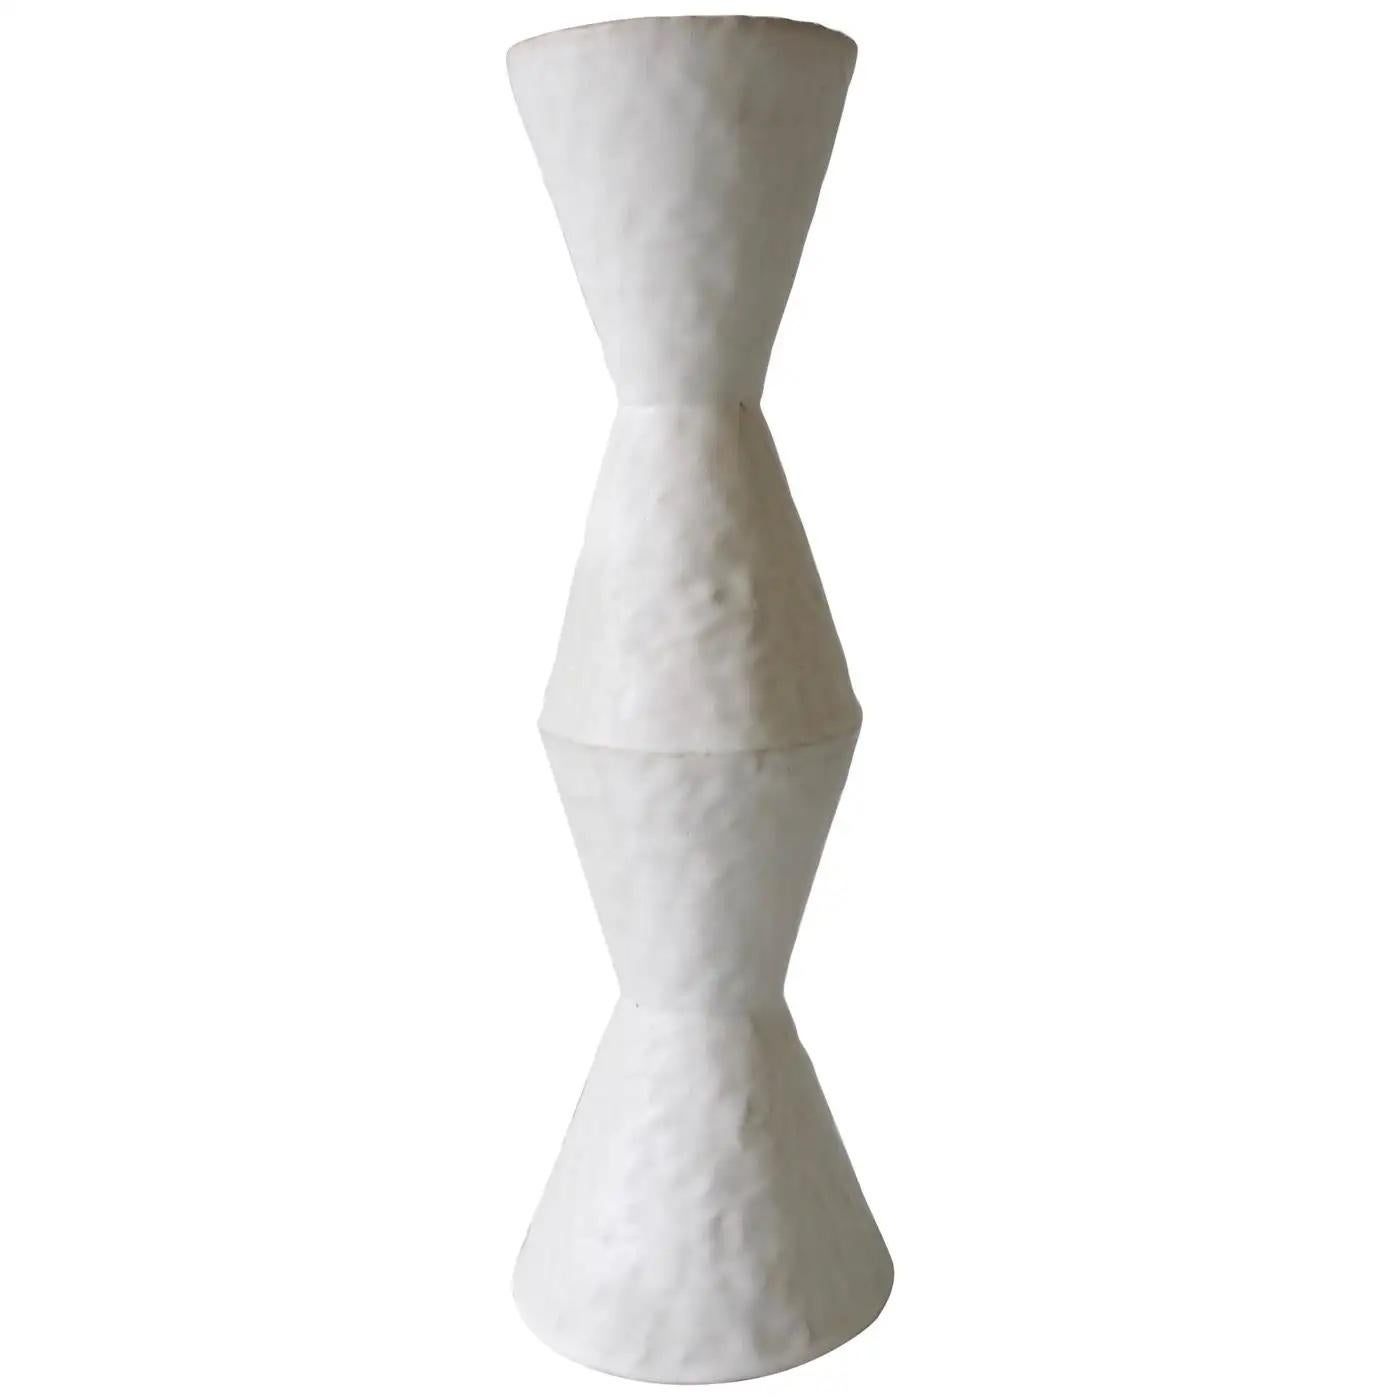 Le vase en grès blanc émaillé de l'artiste céramique américaine contemporaine Giselle Hicks fait partie de sa série Vessel. Chaque A est construite à la main en utilisant une technique de bobinage et de pincement. Il s'agit d'explorations formelles